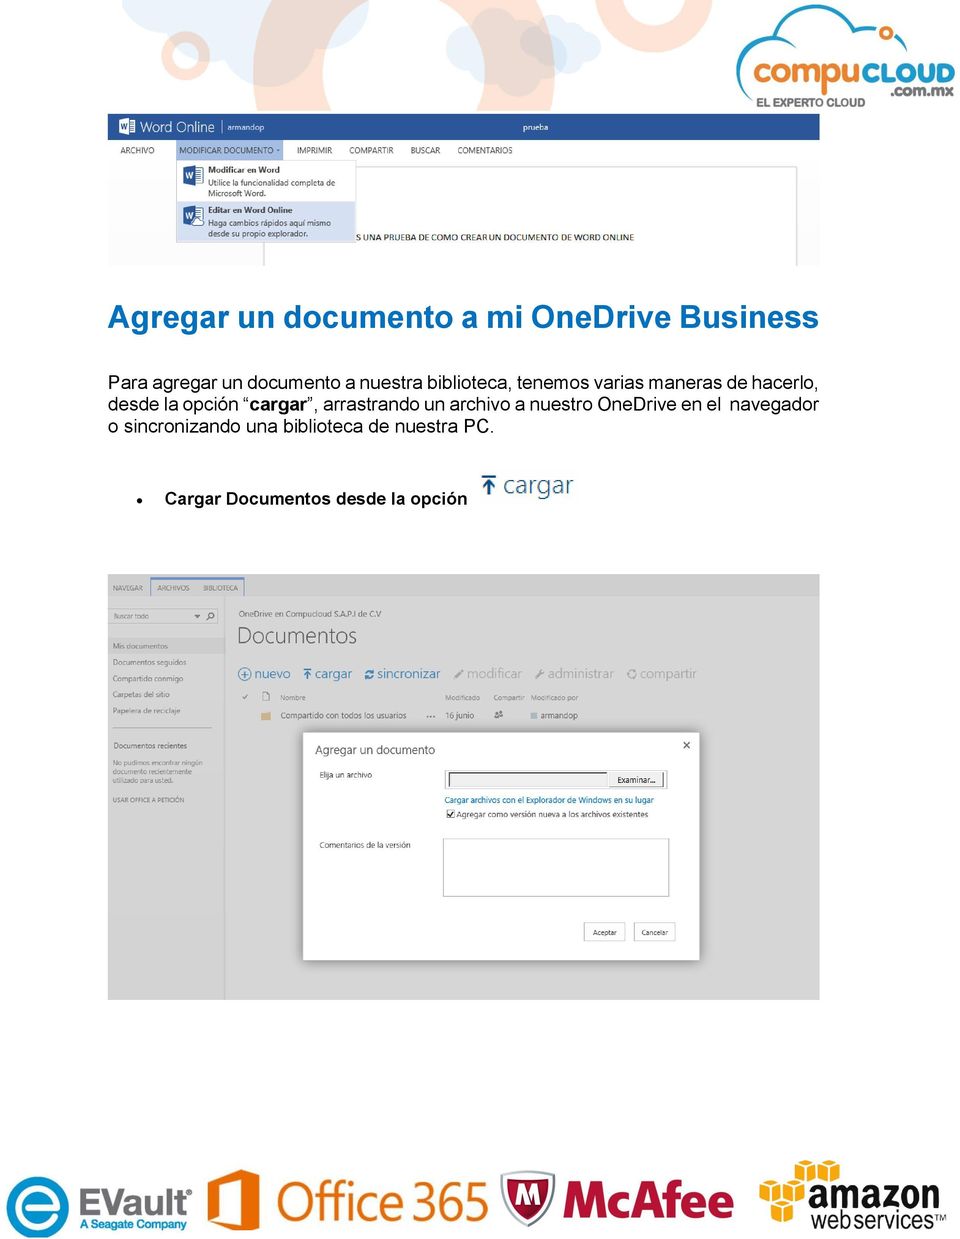 cargar, arrastrando un archivo a nuestro OneDrive en el navegador o